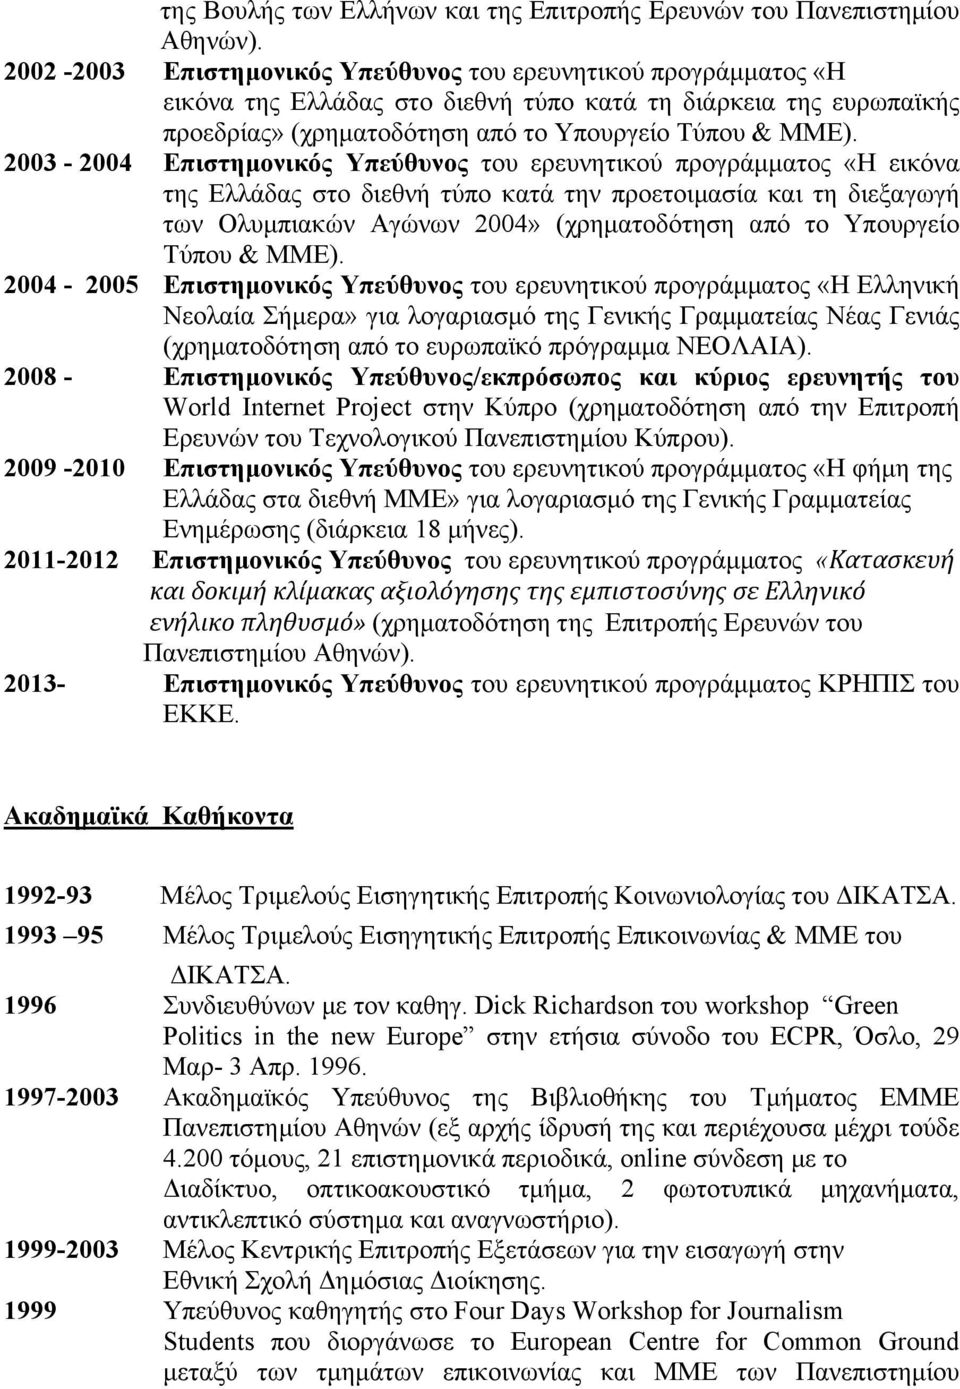 2003-2004 Επιστημονικός Υπεύθυνος του ερευνητικού προγράμματος «Η εικόνα της Ελλάδας στο διεθνή τύπο κατά την προετοιμασία και τη διεξαγωγή των Ολυμπιακών Αγώνων 2004» (χρηματοδότηση από το Υπουργείο